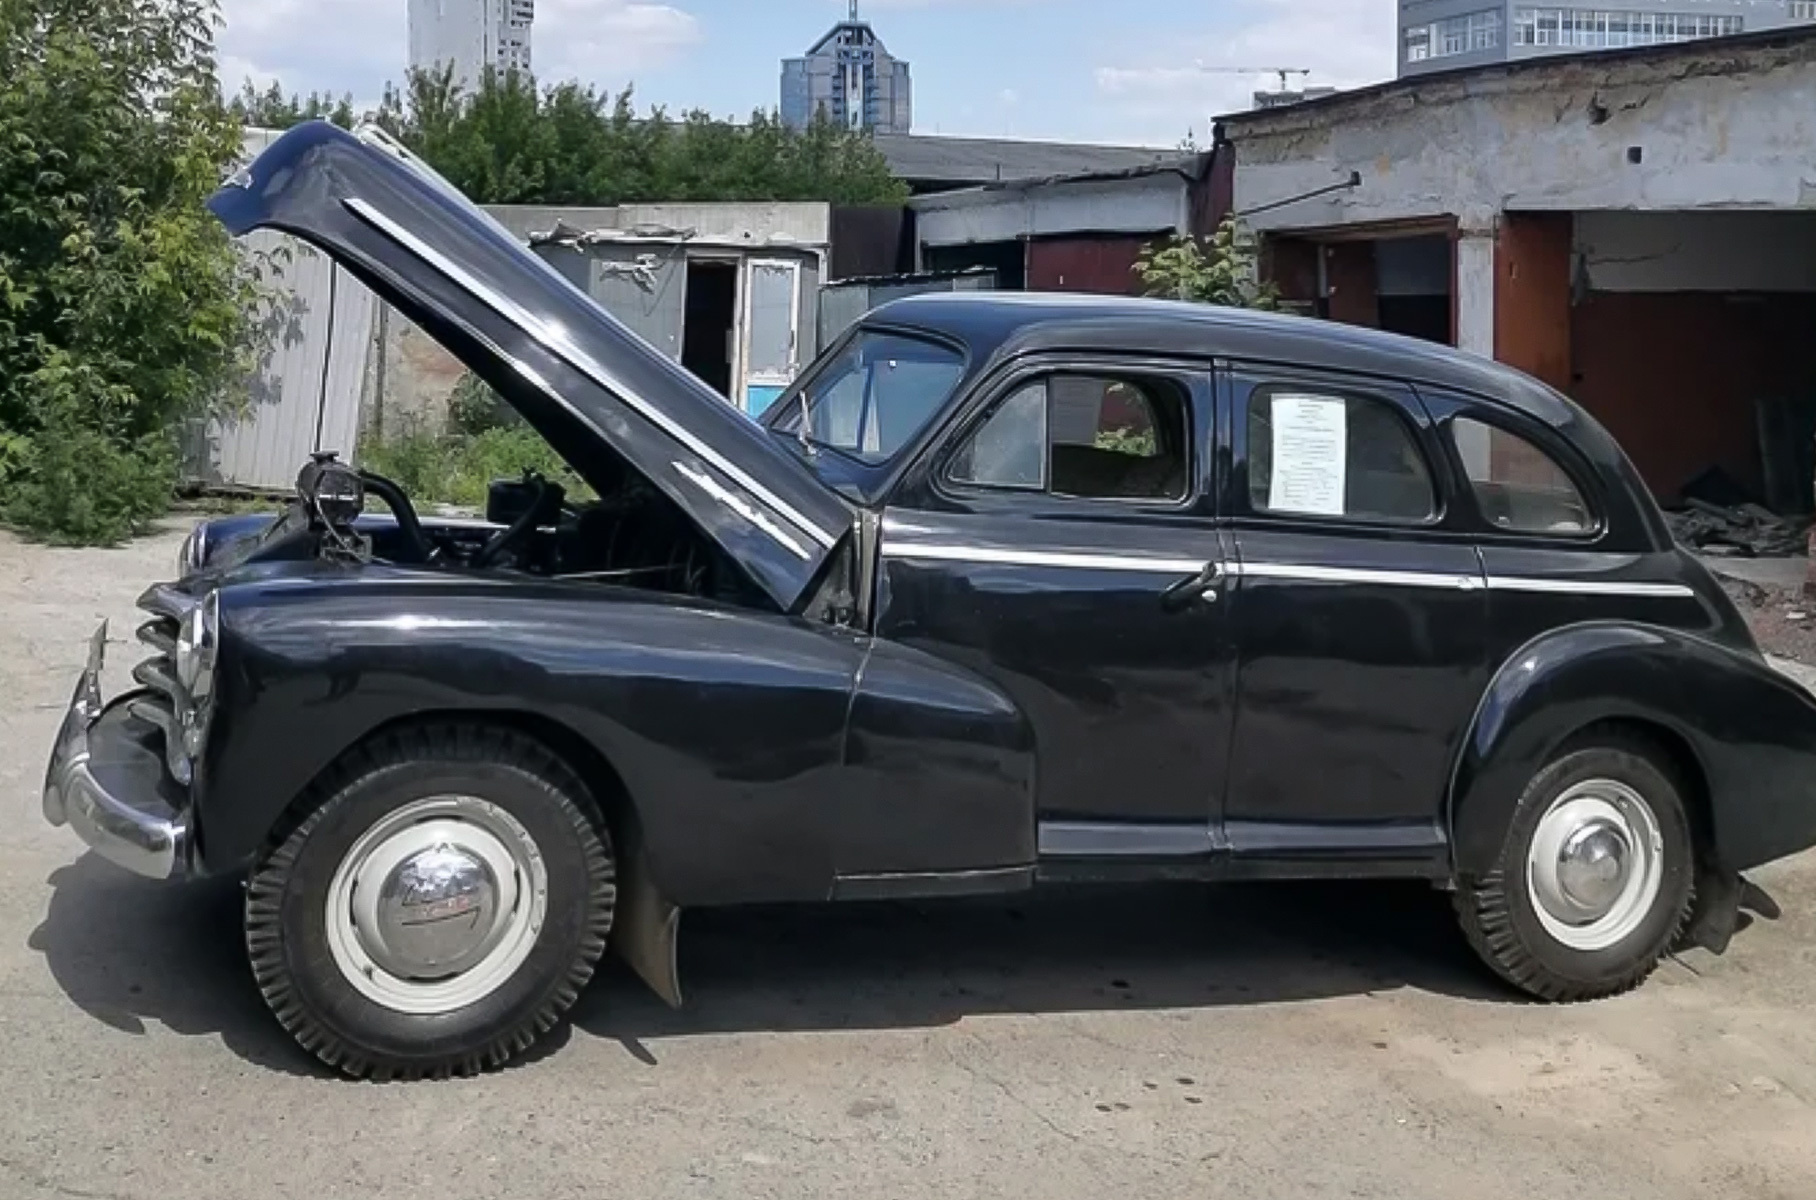 Олды тут: самые старые машины России